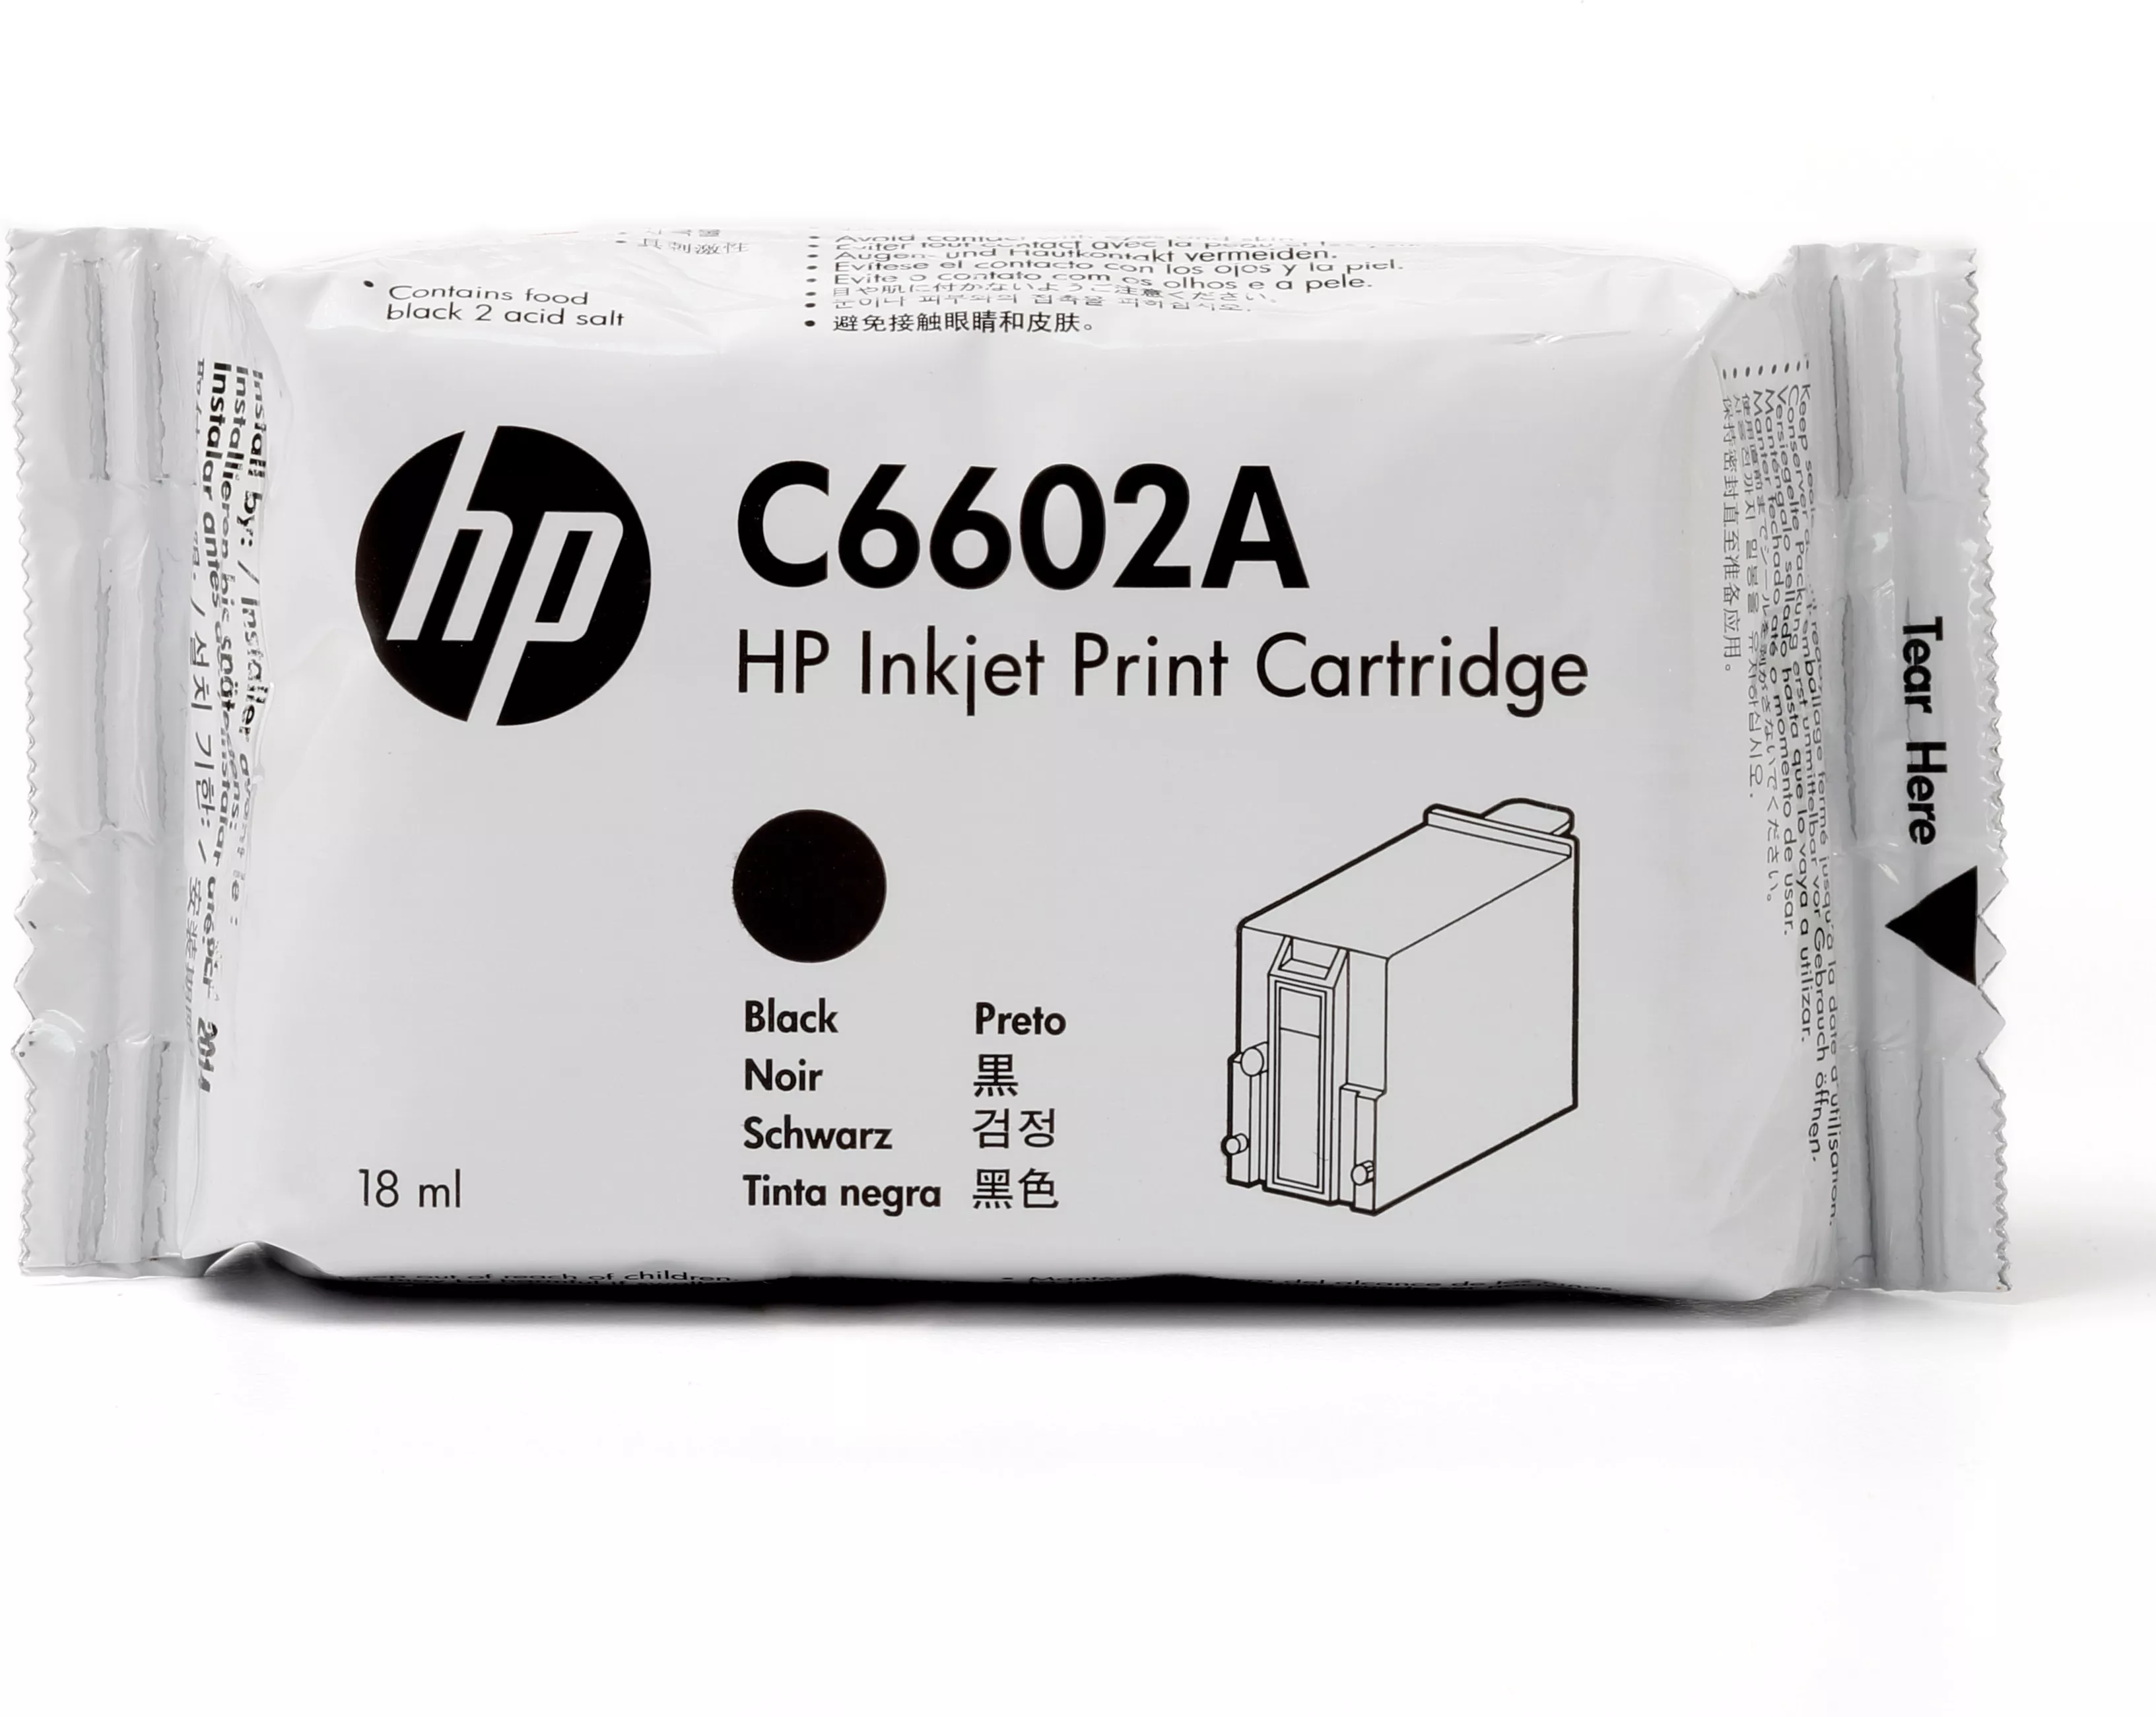 Achat HP original TIJ 1.0 original Ink cartridge C6602A black - 0725184302138